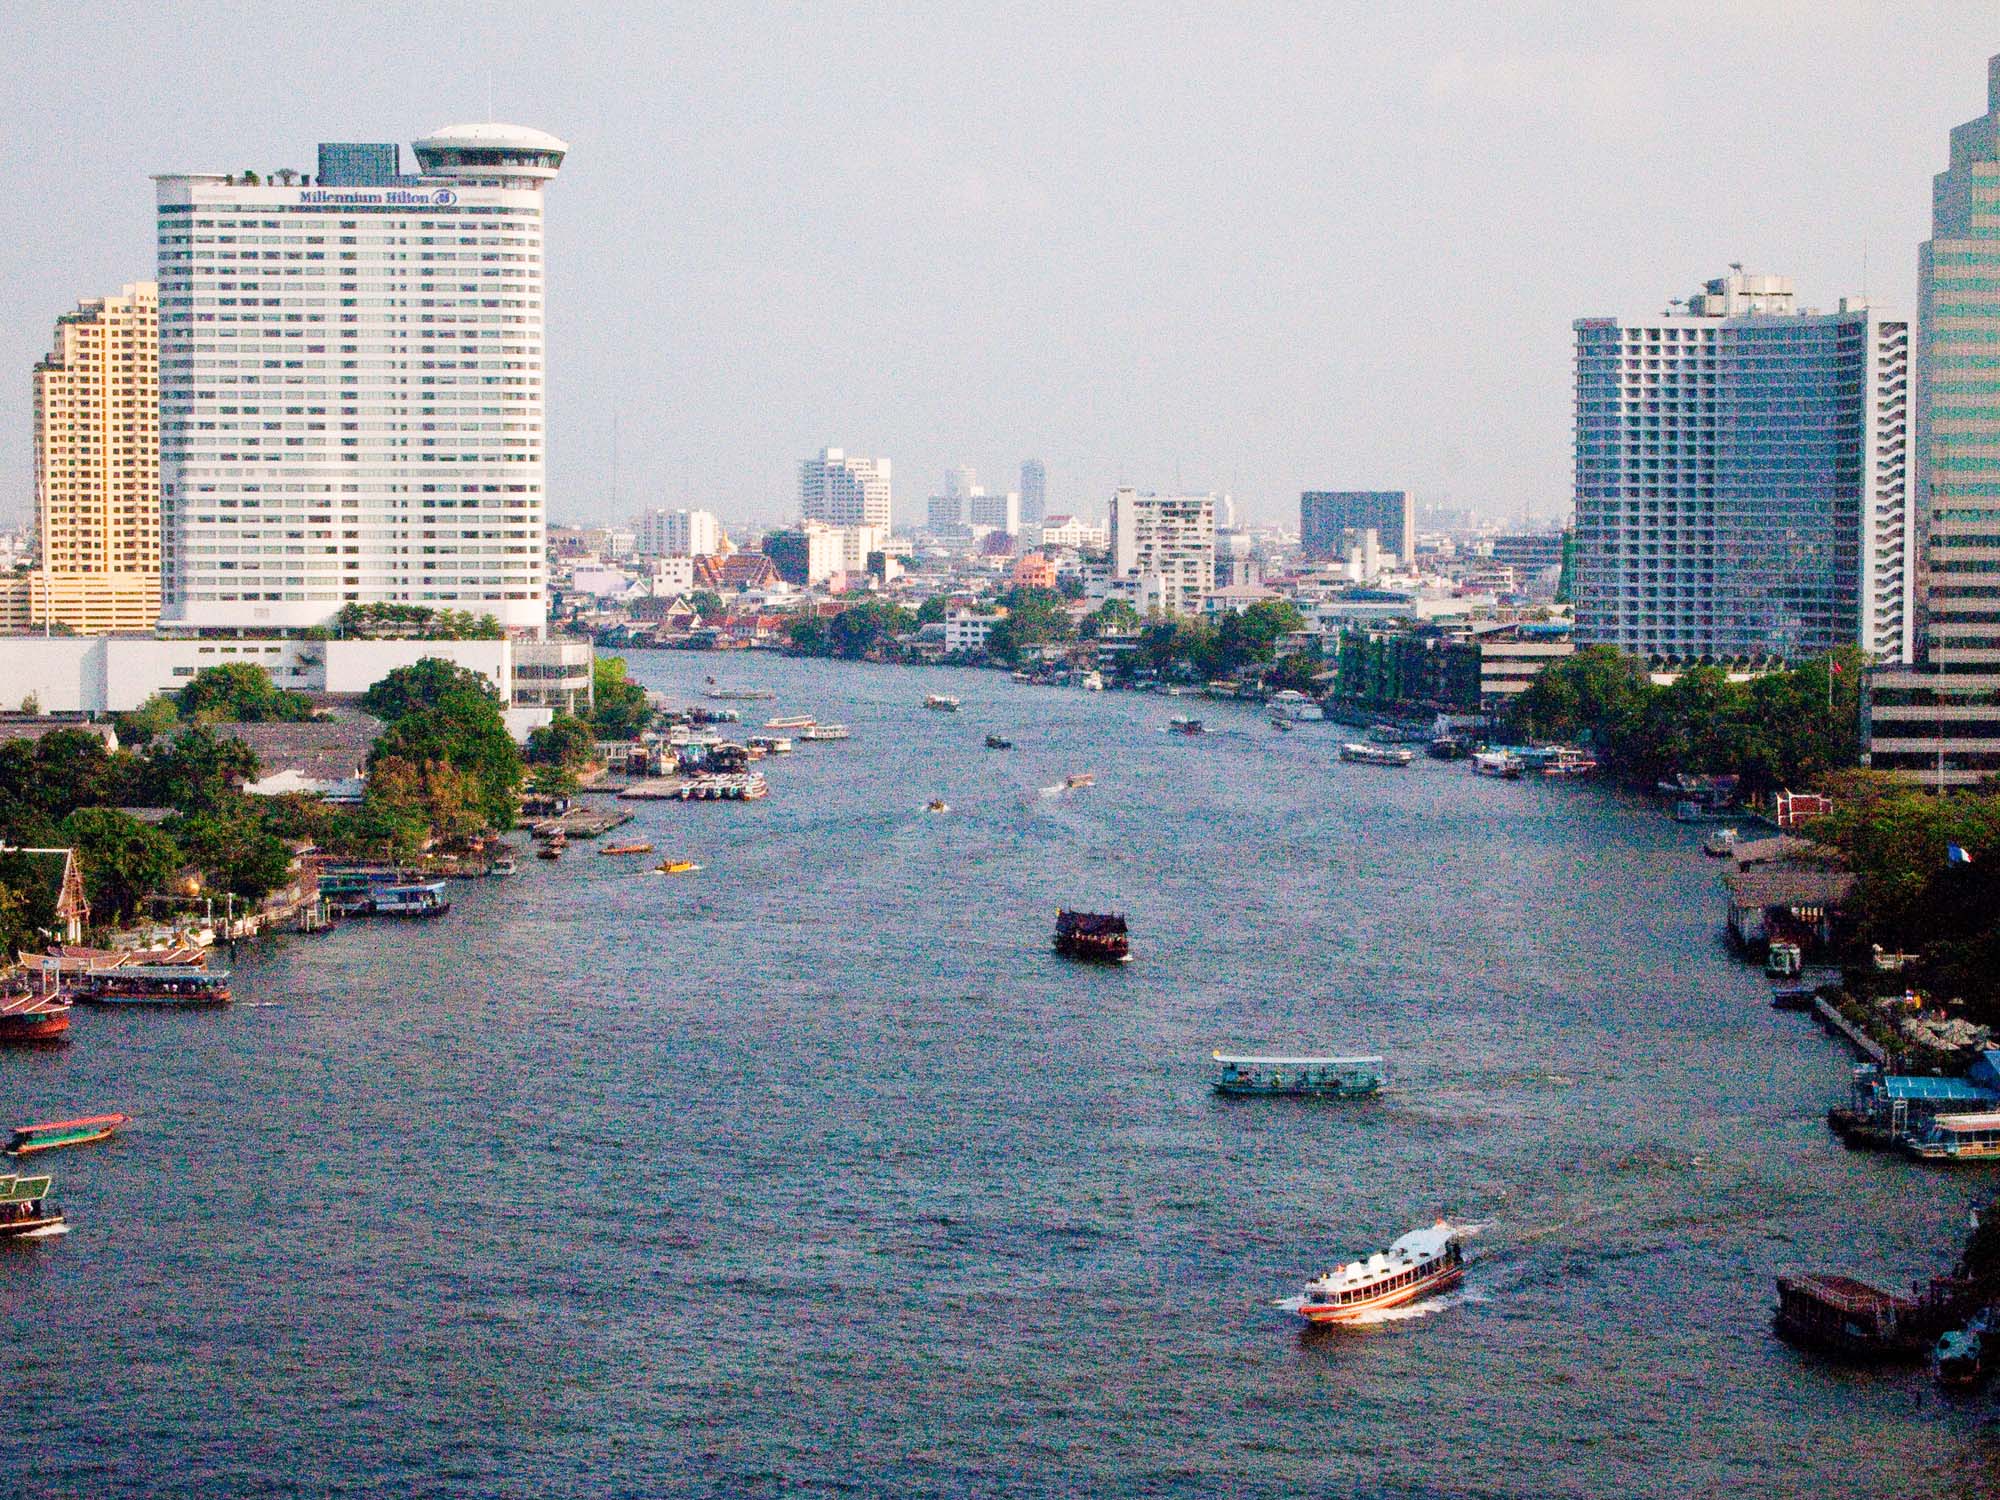 Four Seasons Bangkok at Chao Phraya River.